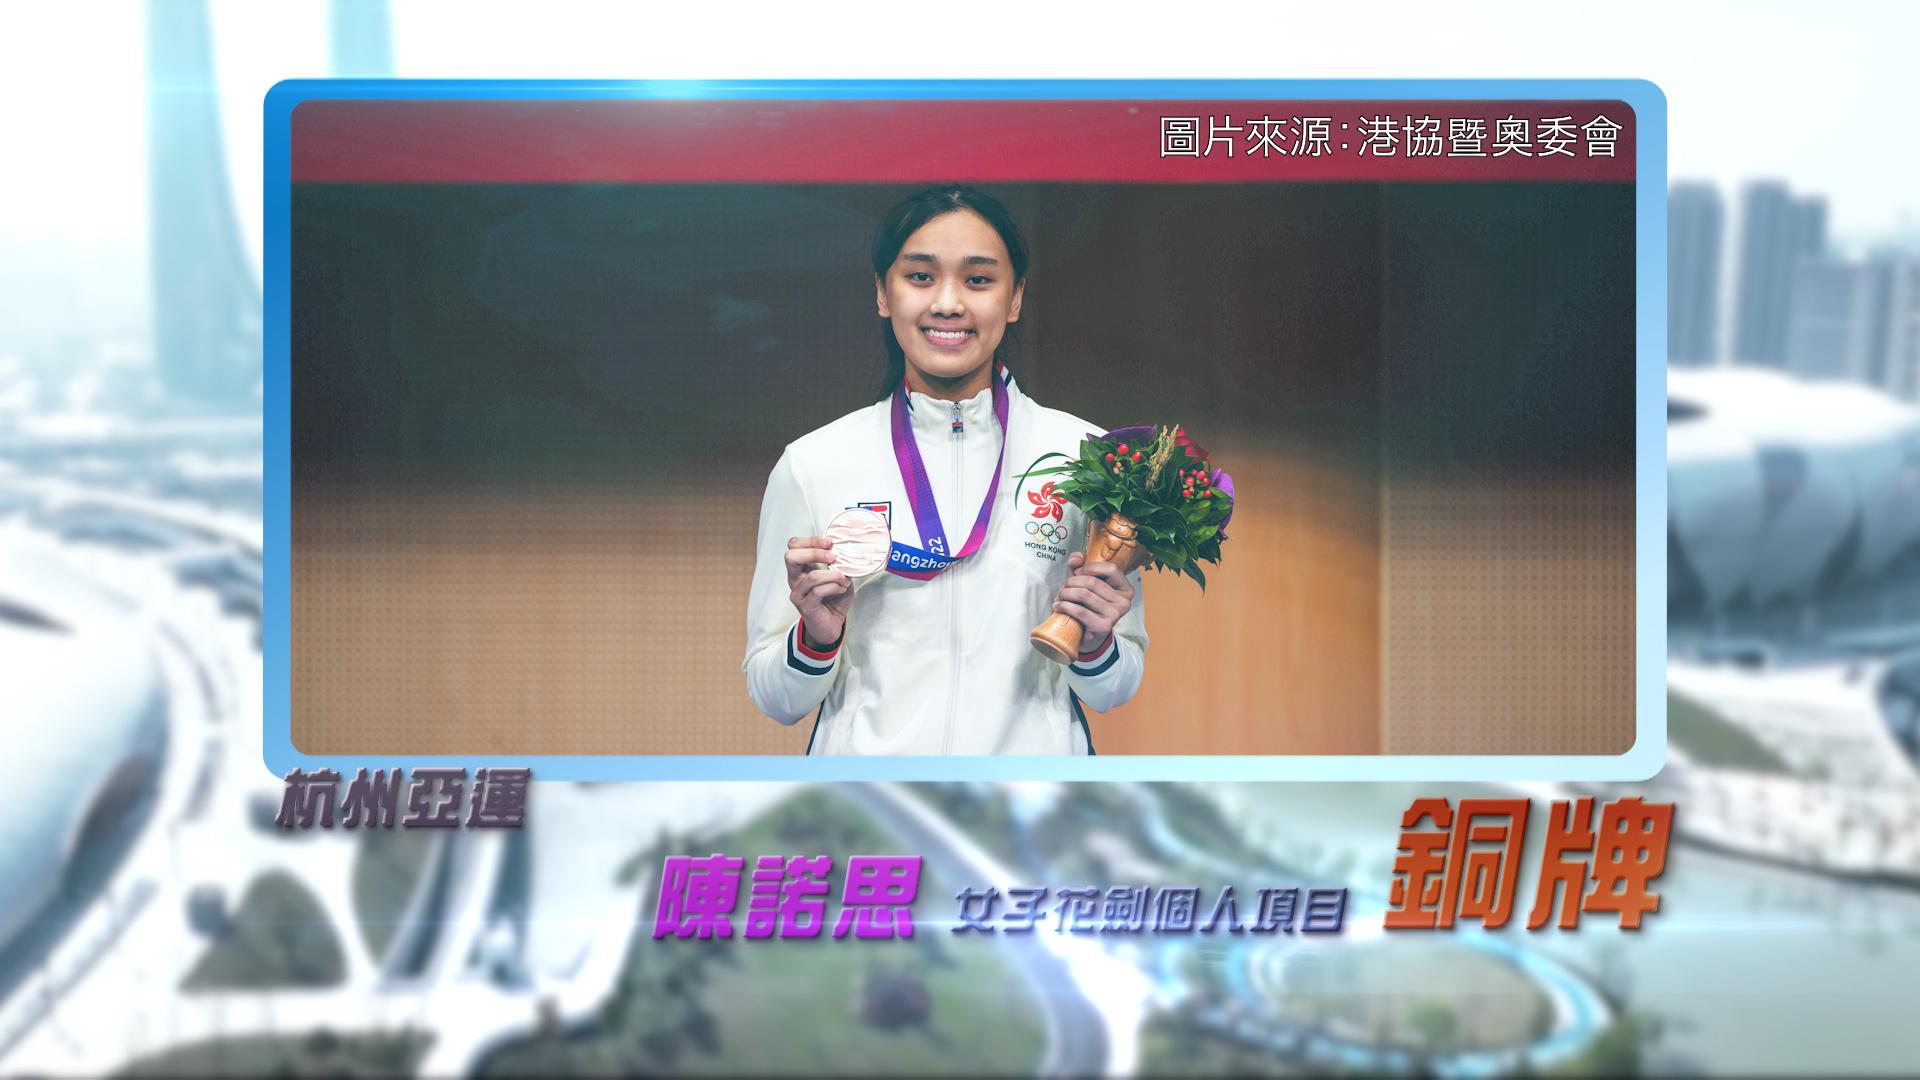 恭喜陈诺思于杭州亚运女子花剑个人项目获得铜牌